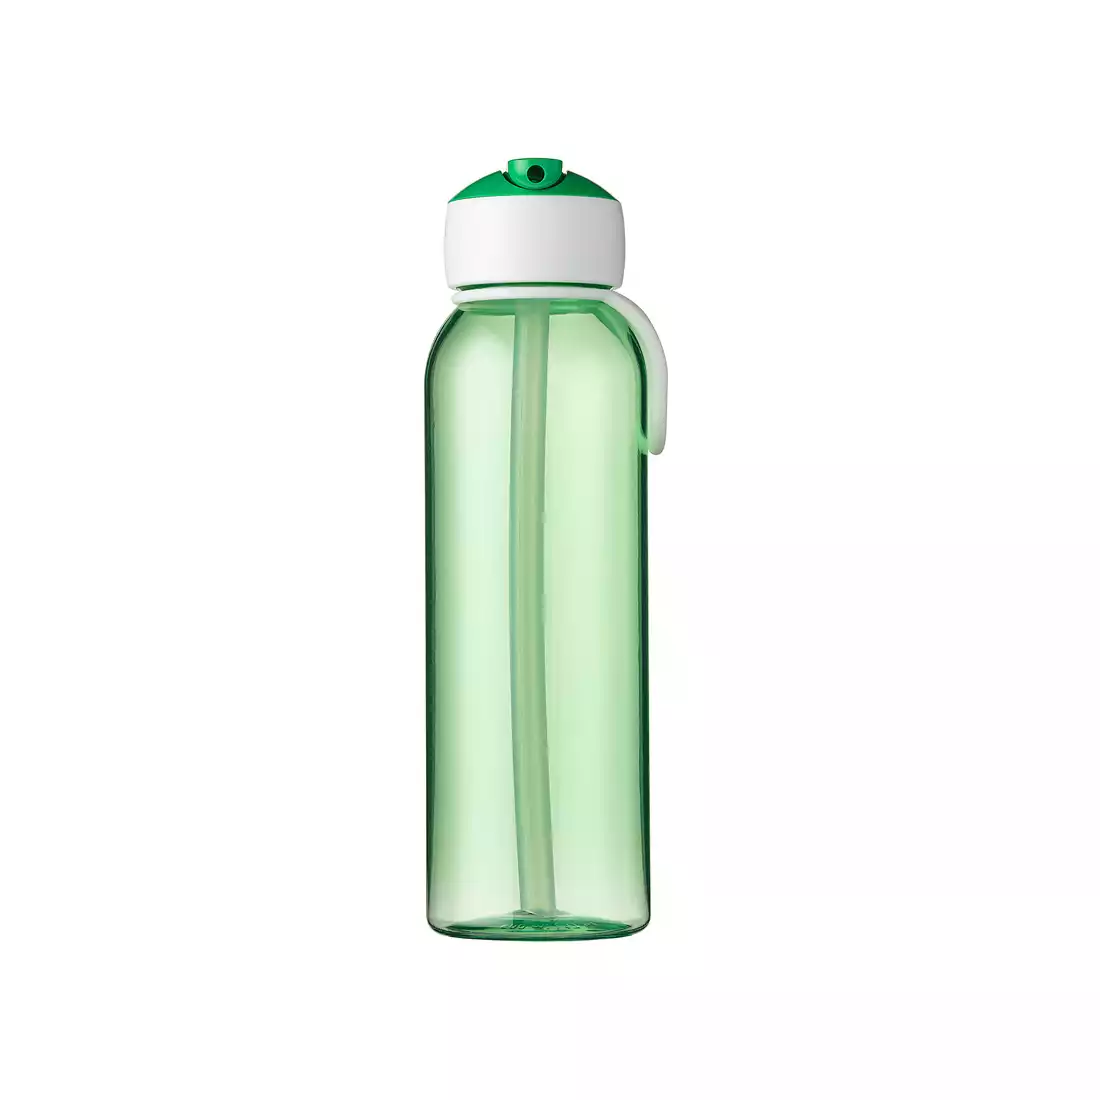 MEPAL FLIP-UP CAMPUS 500 ml fľaša na vodu, zelená